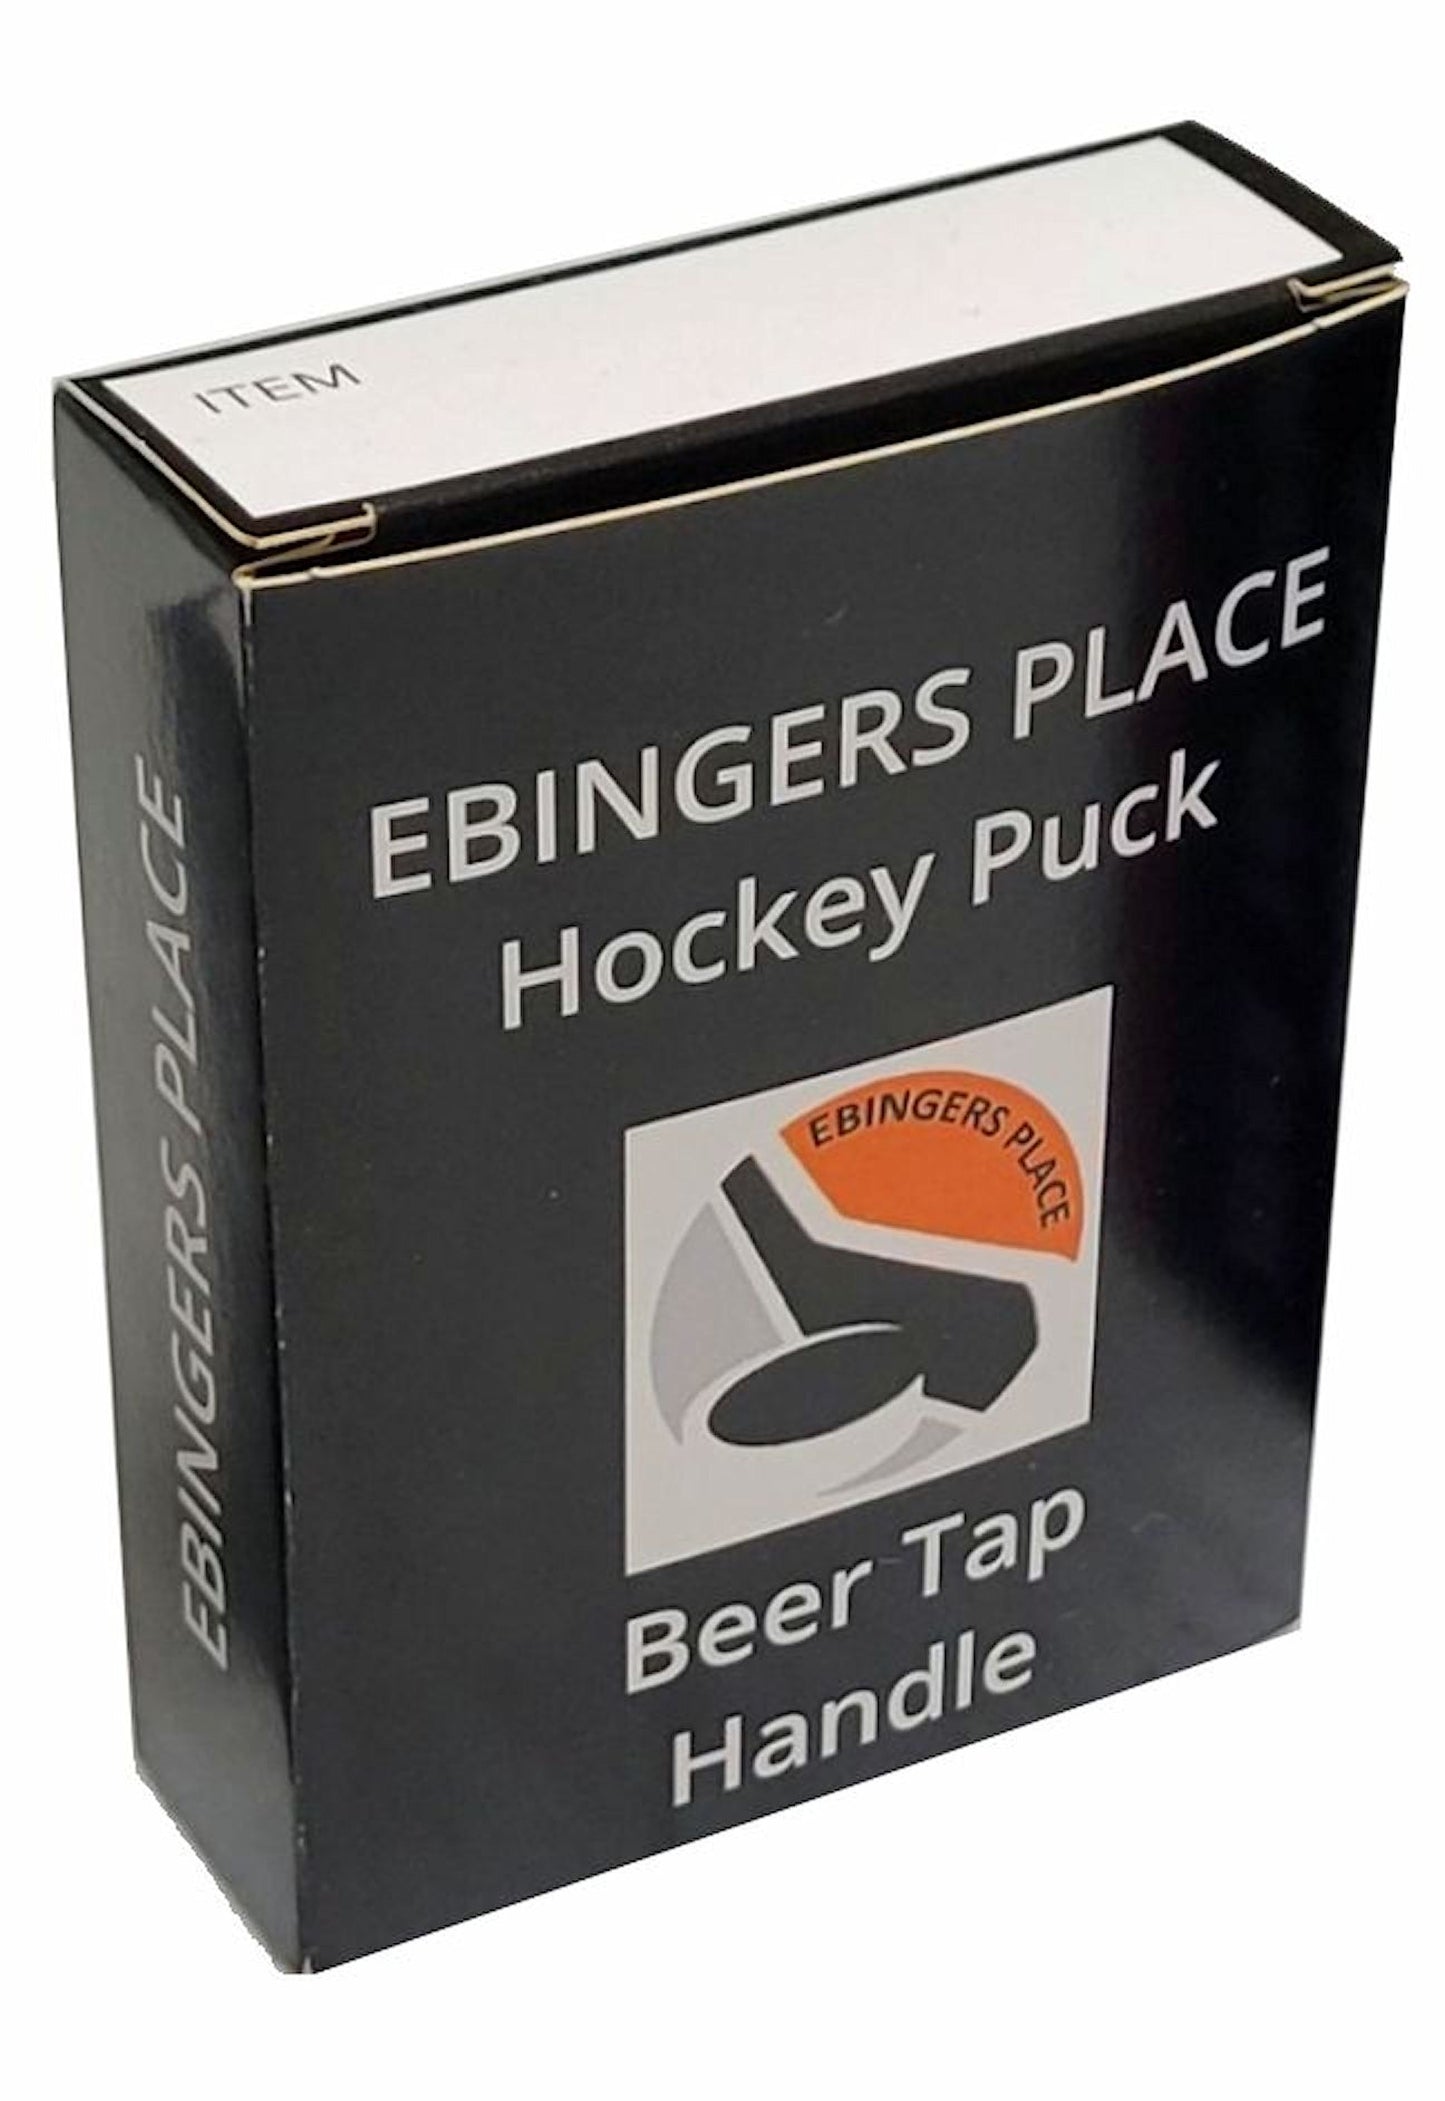 Dallas Stars Reverse Series Hockey Puck Beer Tap Handle